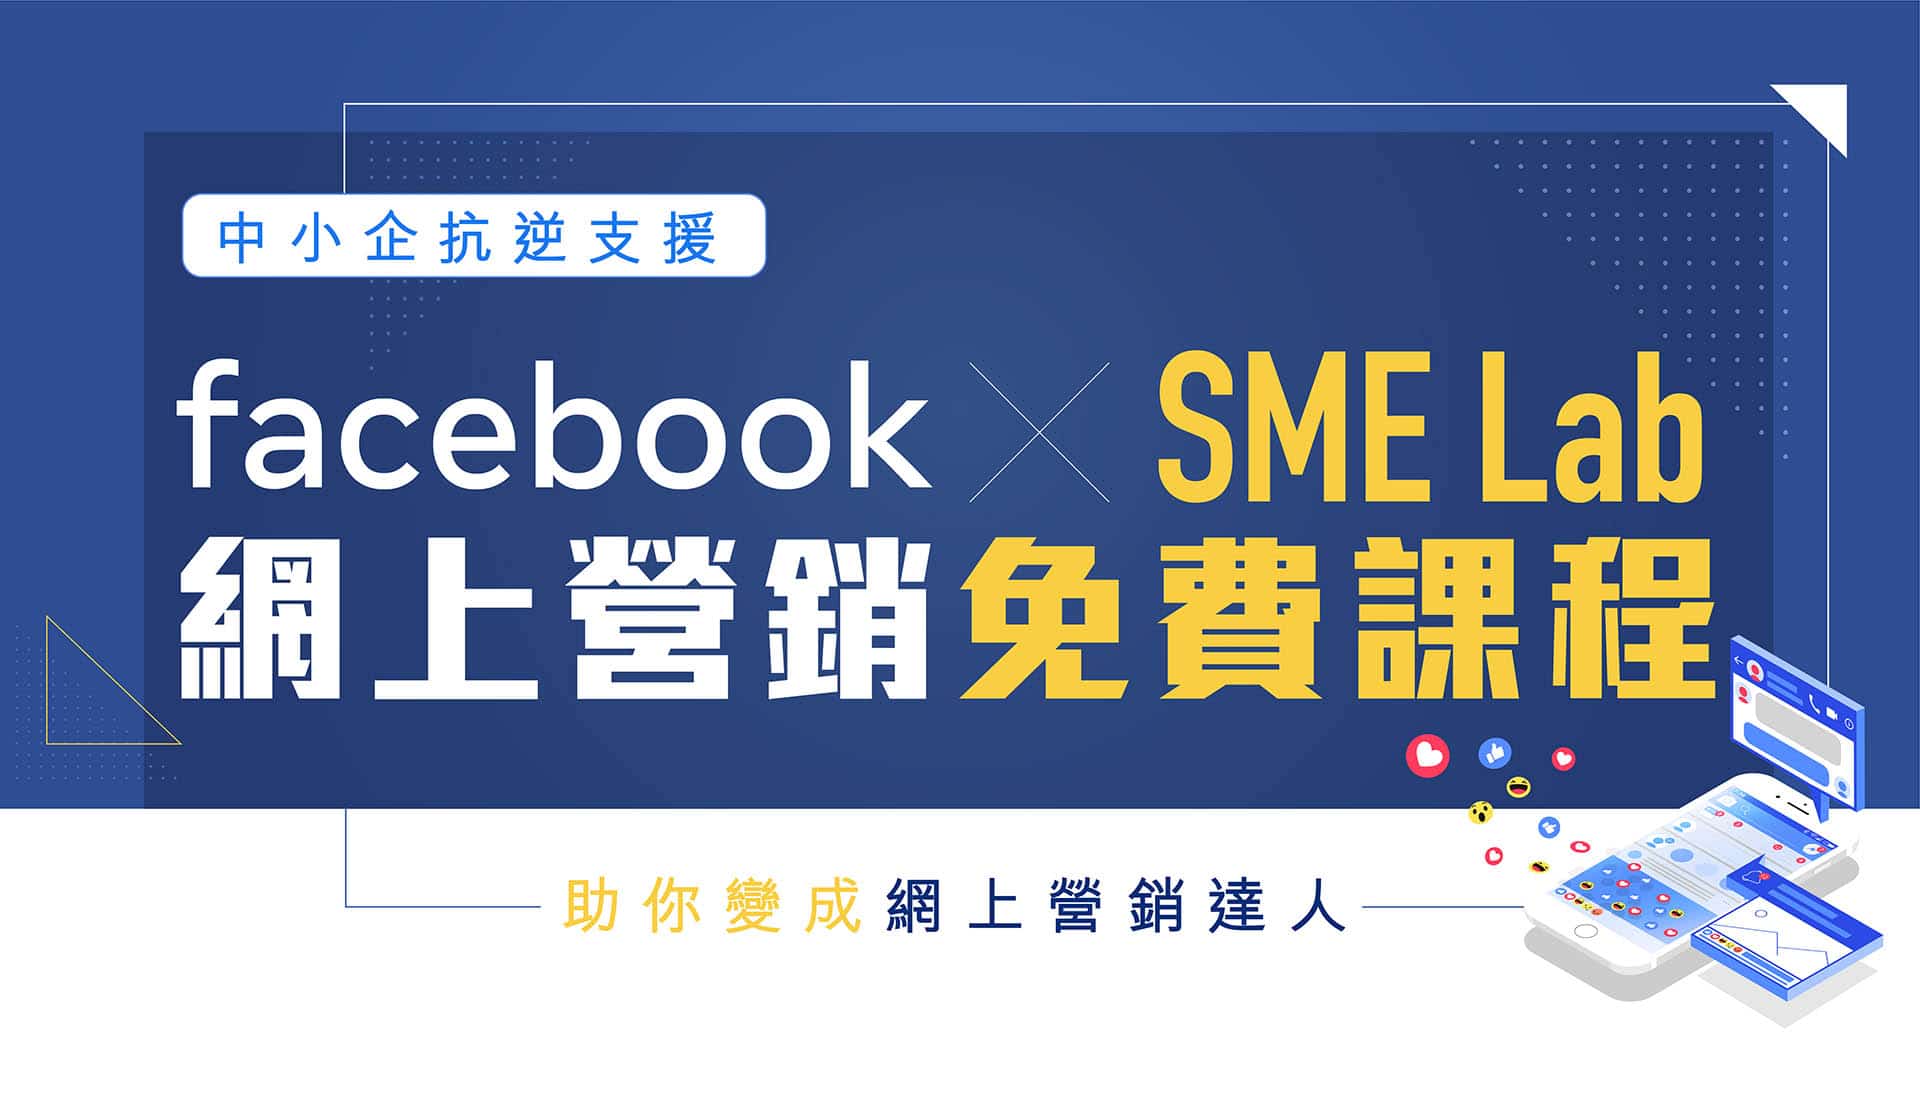 Facebook X SME Lab｜網上營銷免費課程 - 註冊及推廣計劃